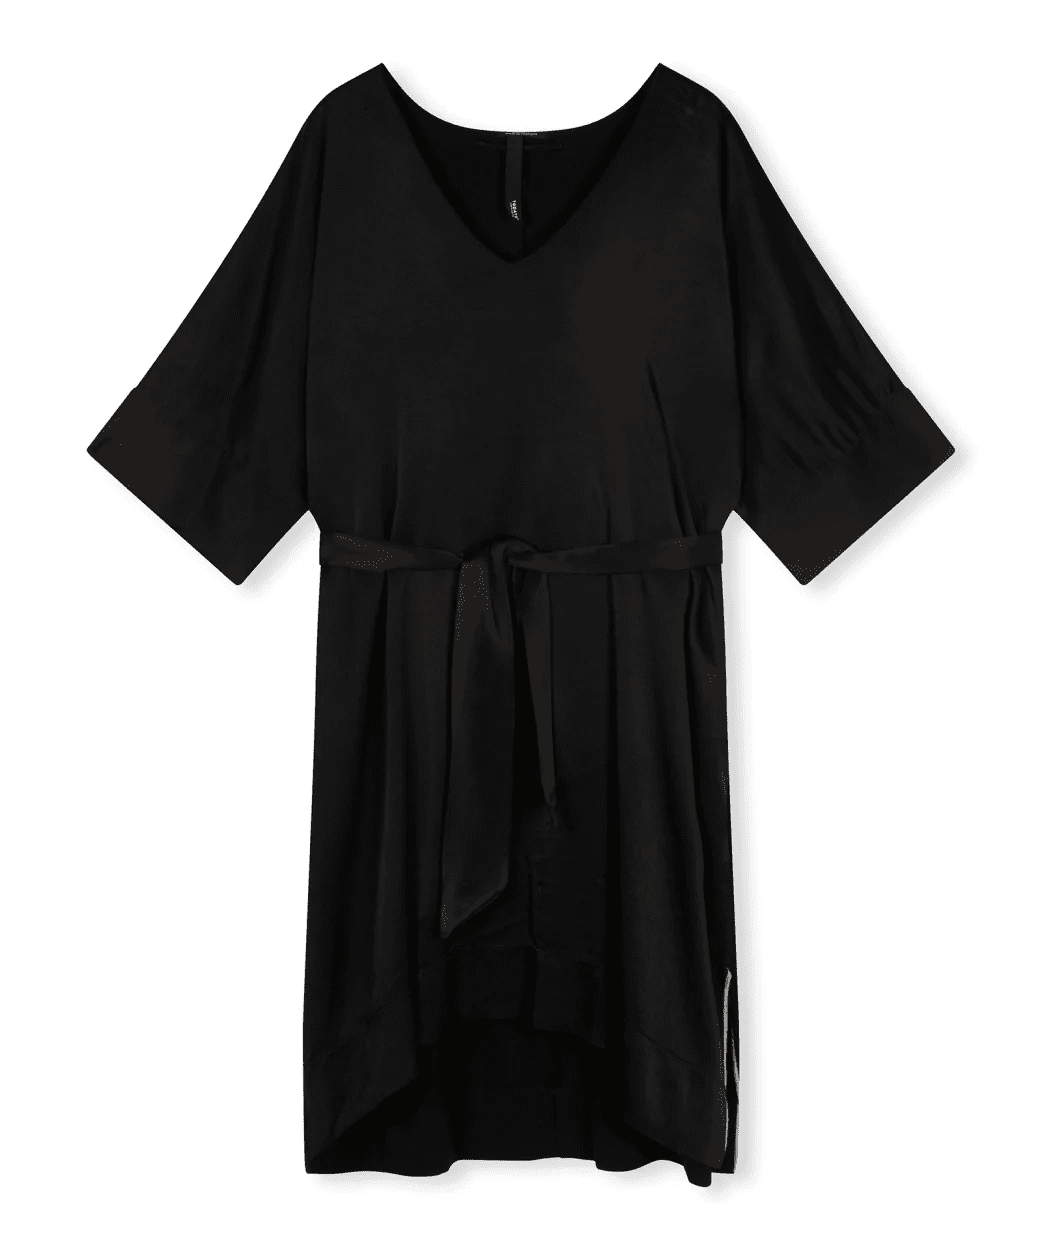 20 308 2203 1012 10days Kimono Tunic Black Schwarz Amsterdam Kleid (1)